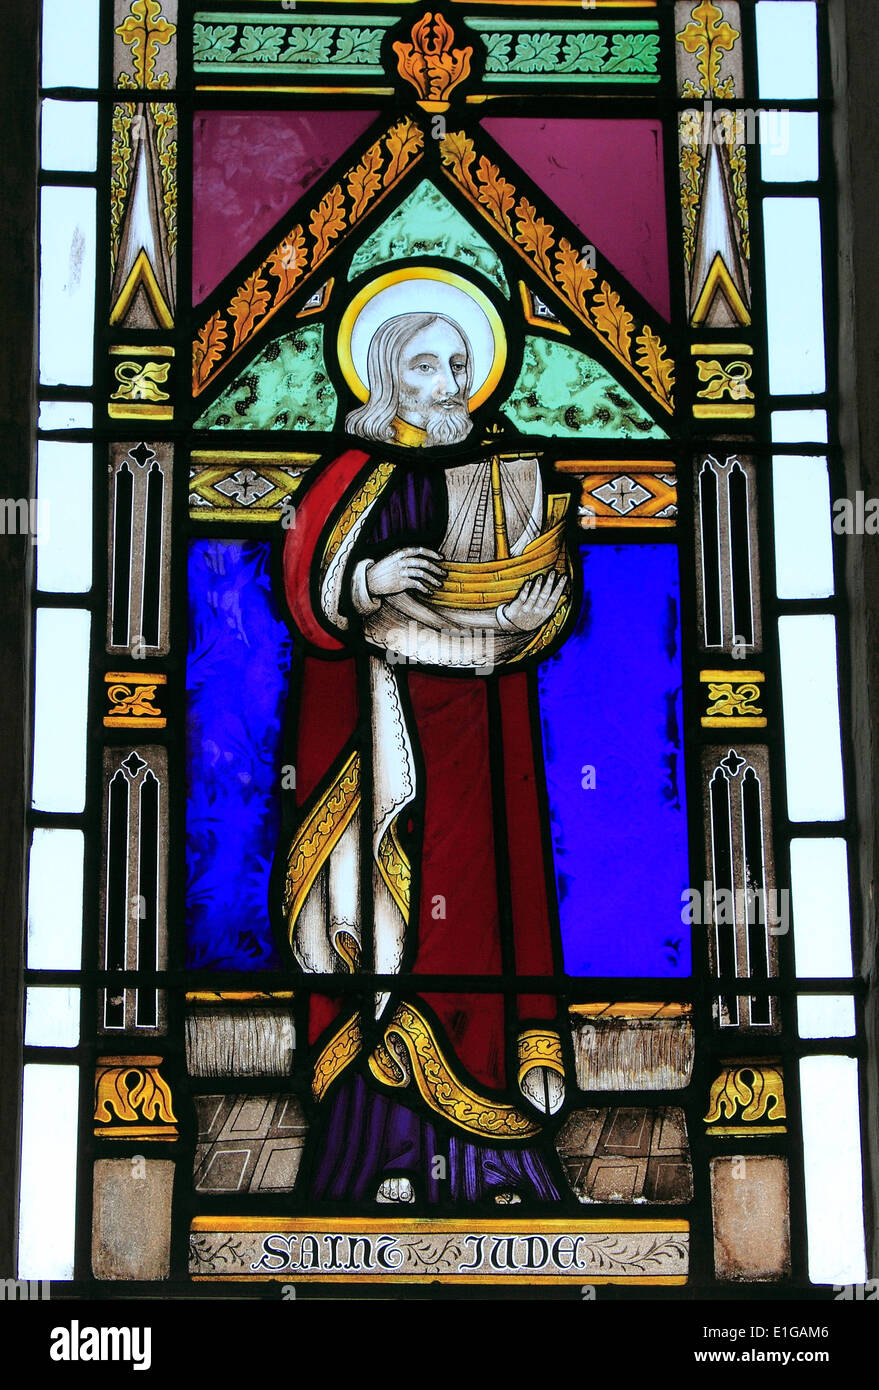 Saint Jude, vitrail, par Joseph Grant de Wymondham, 1856 Wighton, Norfolk England UK saint saints windows English Banque D'Images